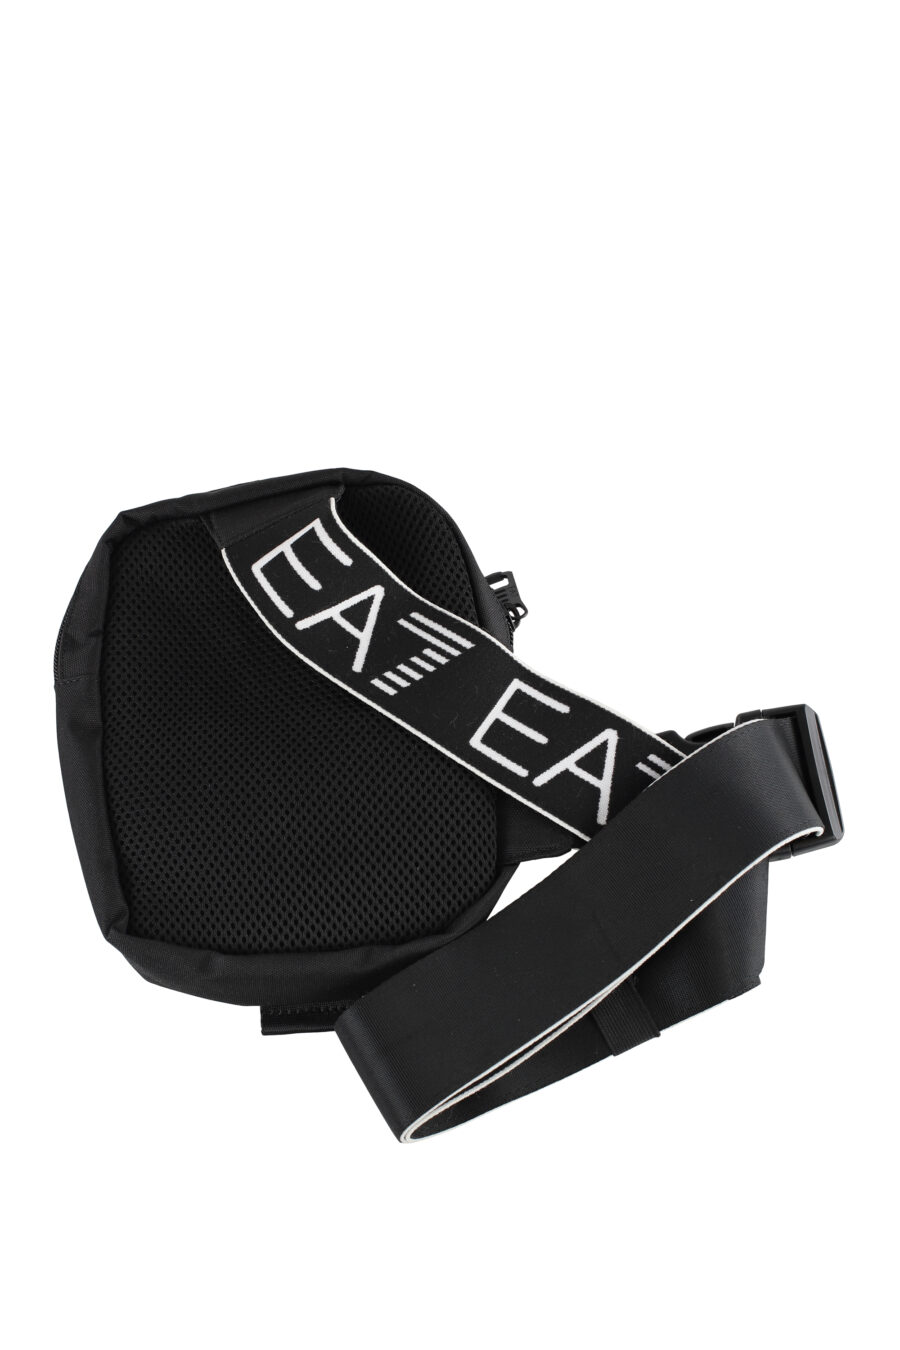 Schwarze Crossbody-Tasche mit "lux identity"-Logo auf dem Riemen - IMG 5144